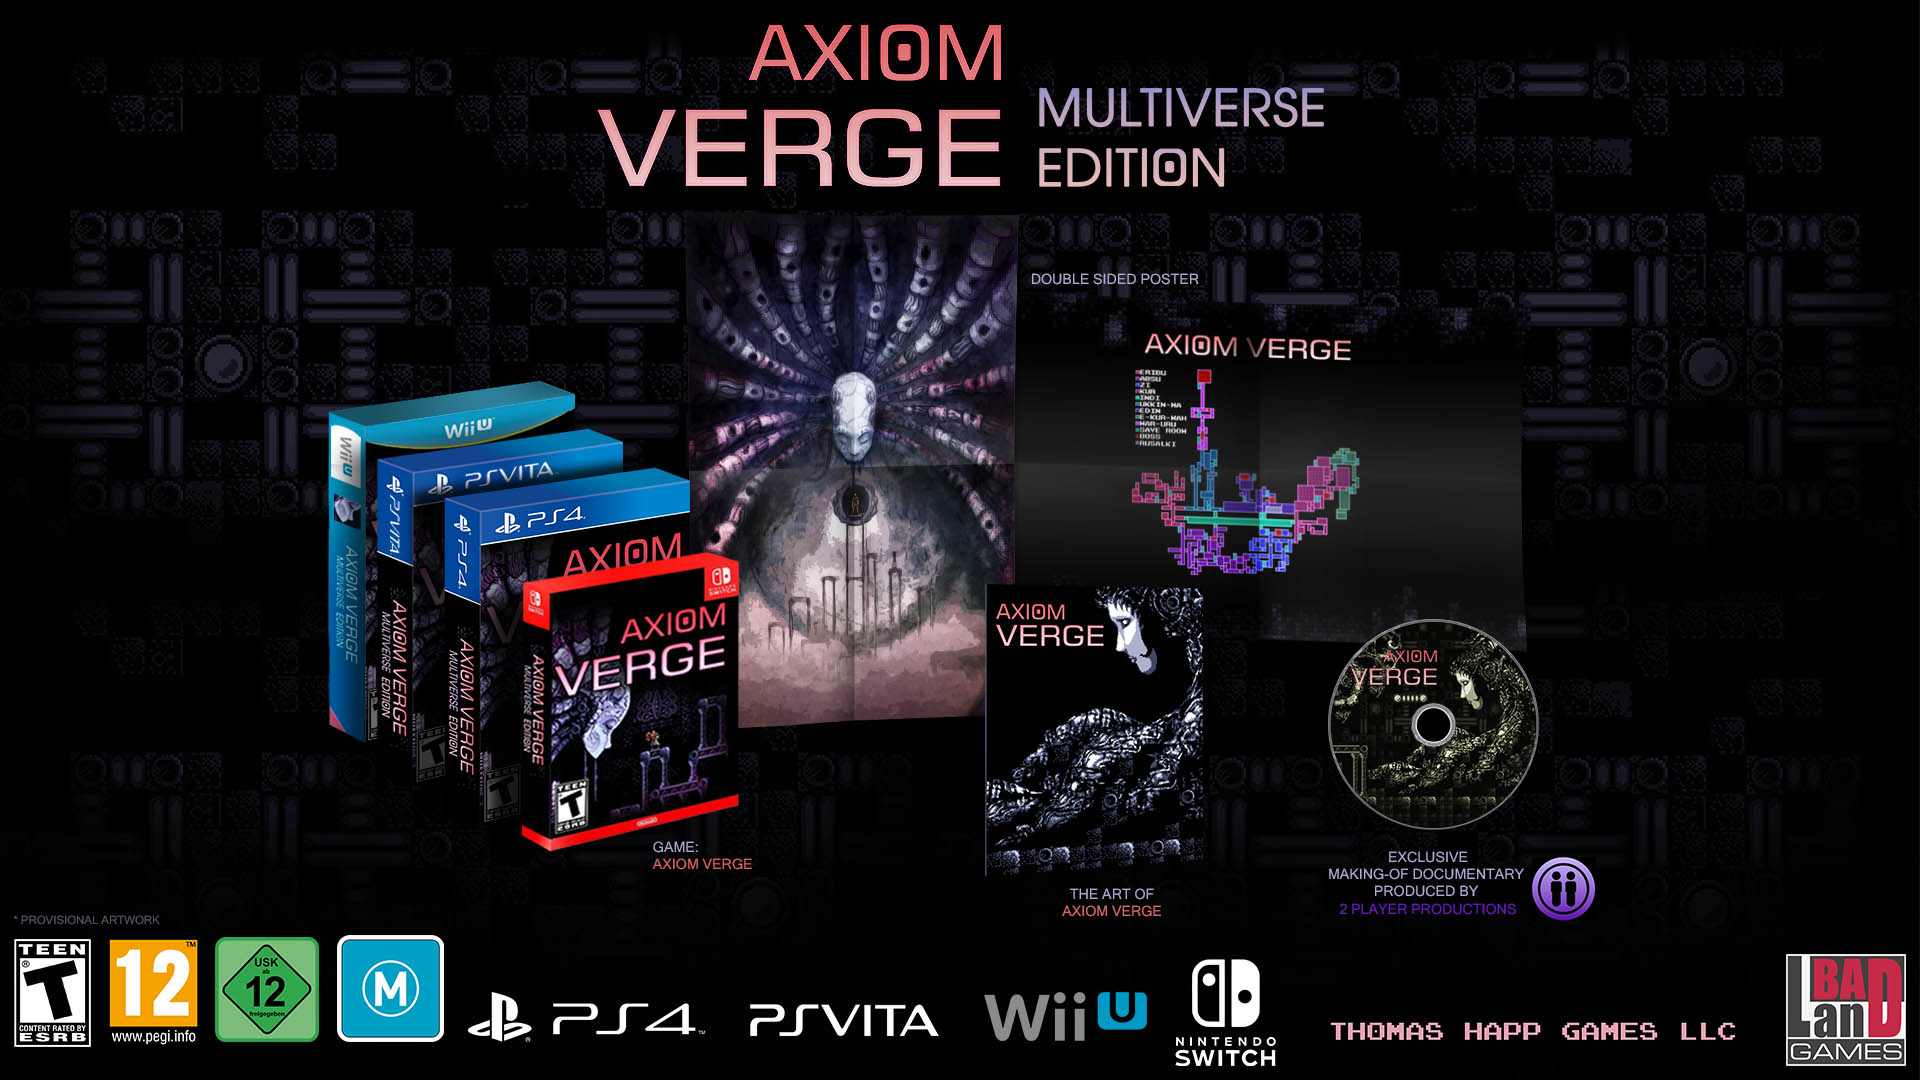 BadLand Games lanzará en agosto Axiom Verge: Multiverse Edition para PS4, PS Vita, Wii U y Switch